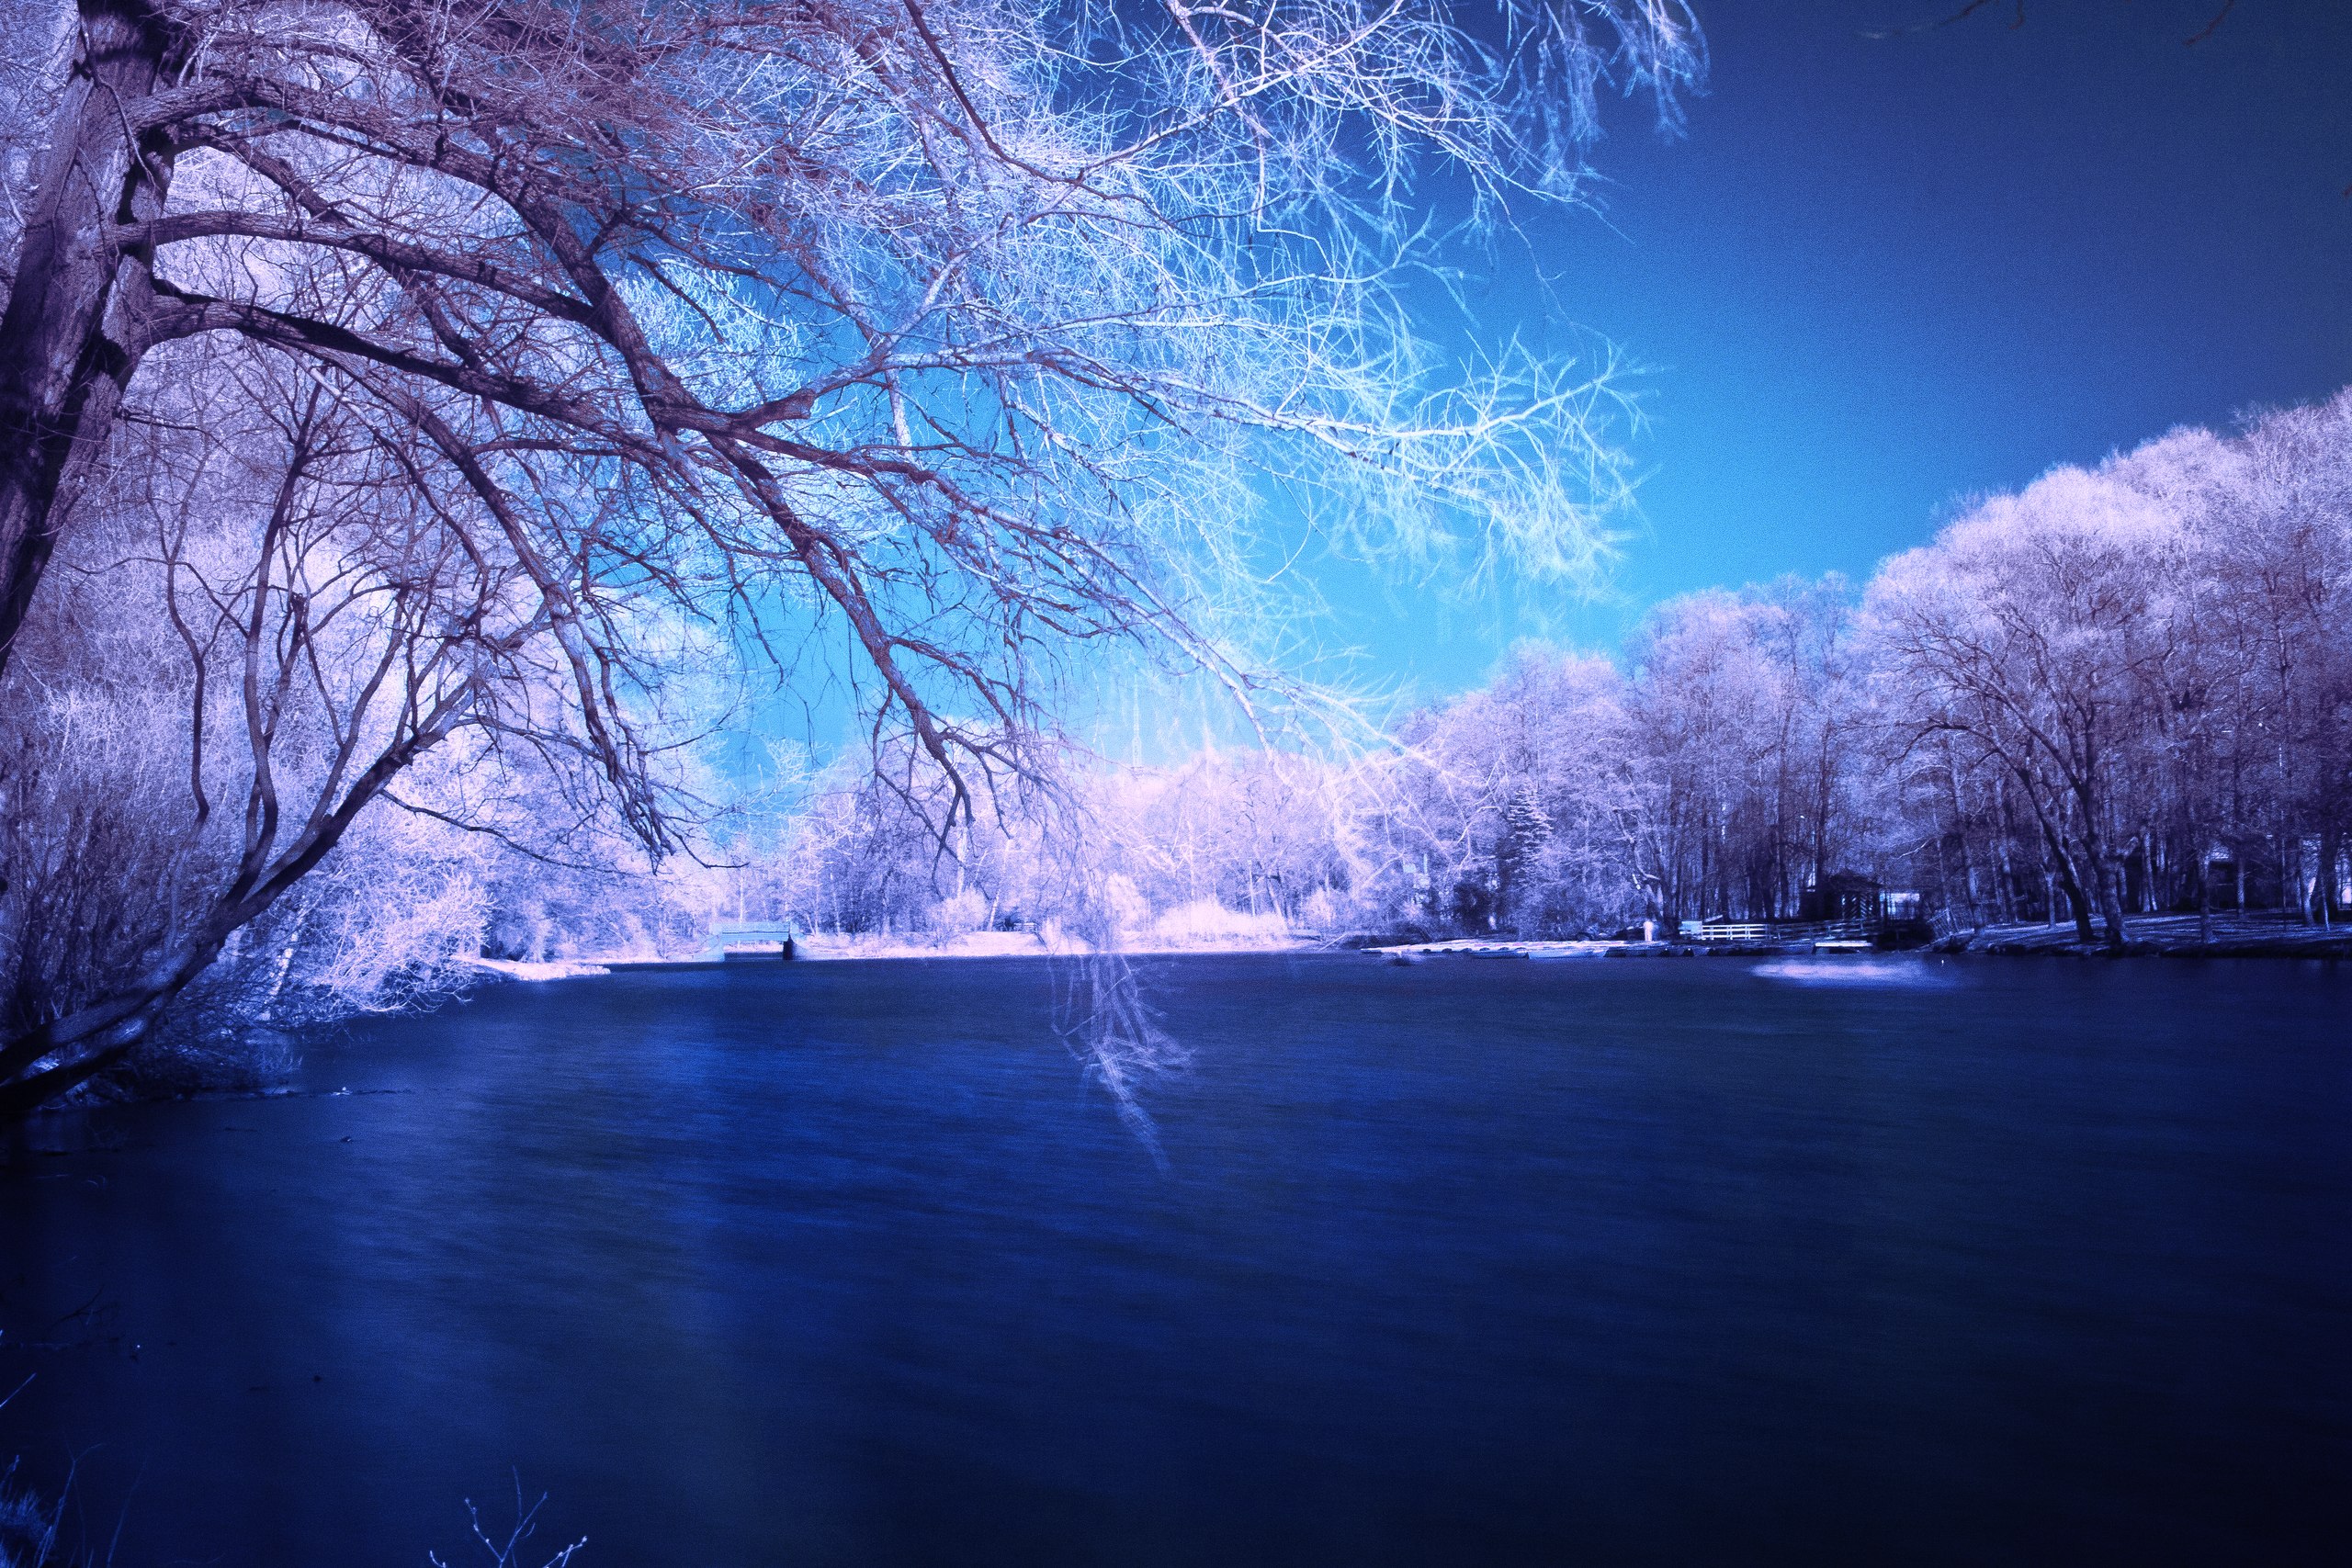 Скачать обои бесплатно Зима, Снег, Озеро, Дерево, Синий, Земля/природа картинка на рабочий стол ПК